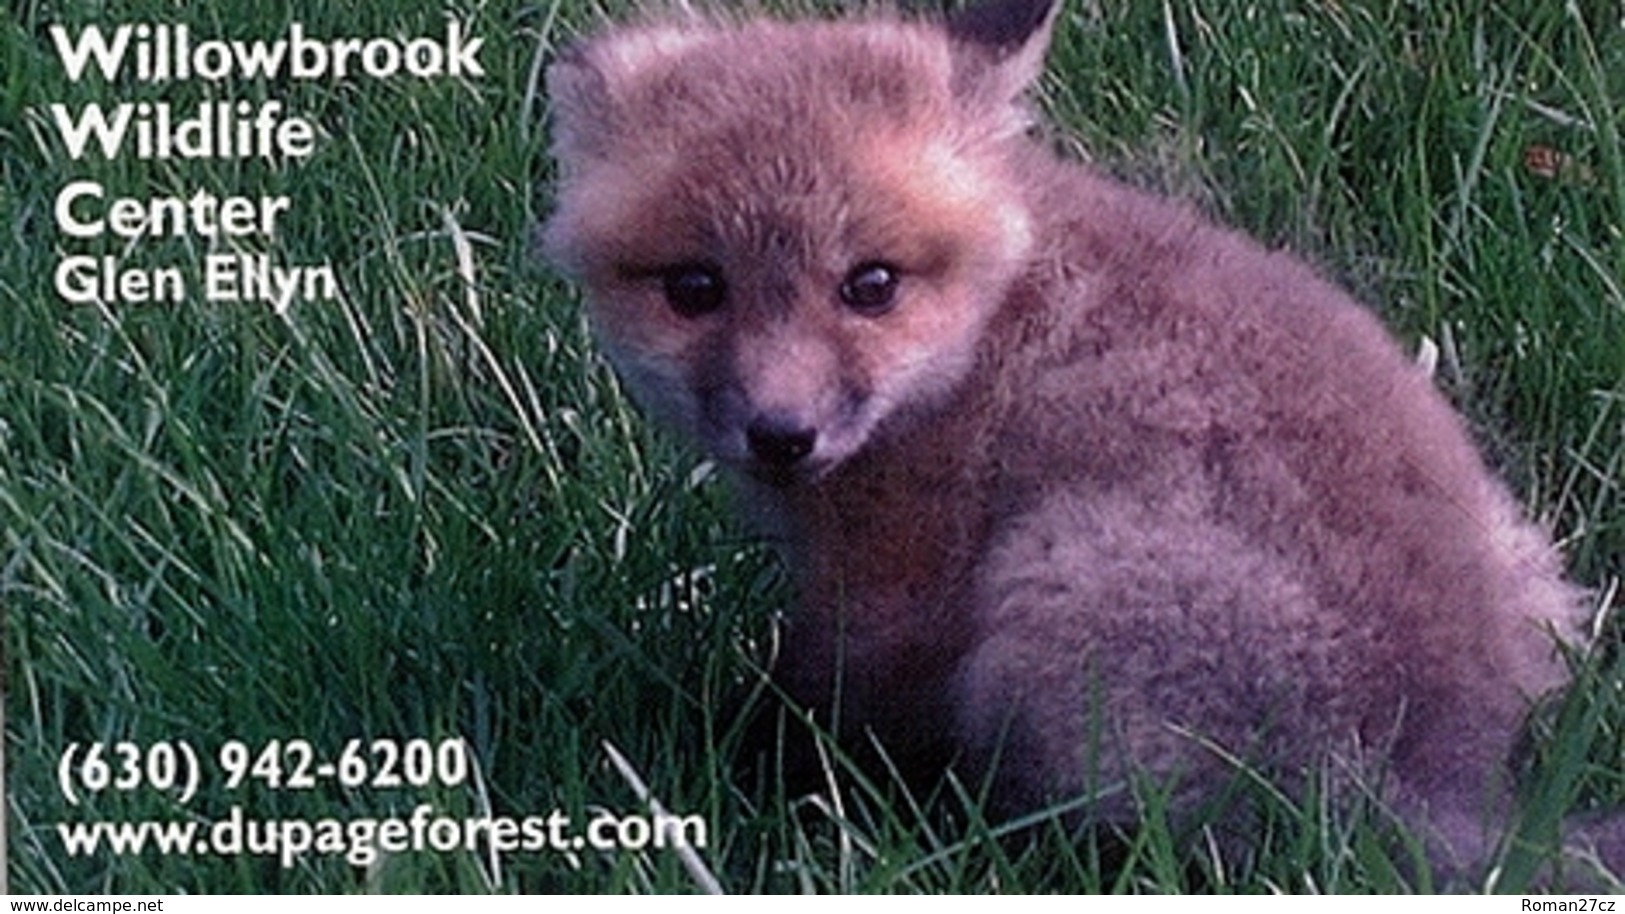 Willowbrook Wildlife Center (US) - Baby Fox - Animals & Fauna